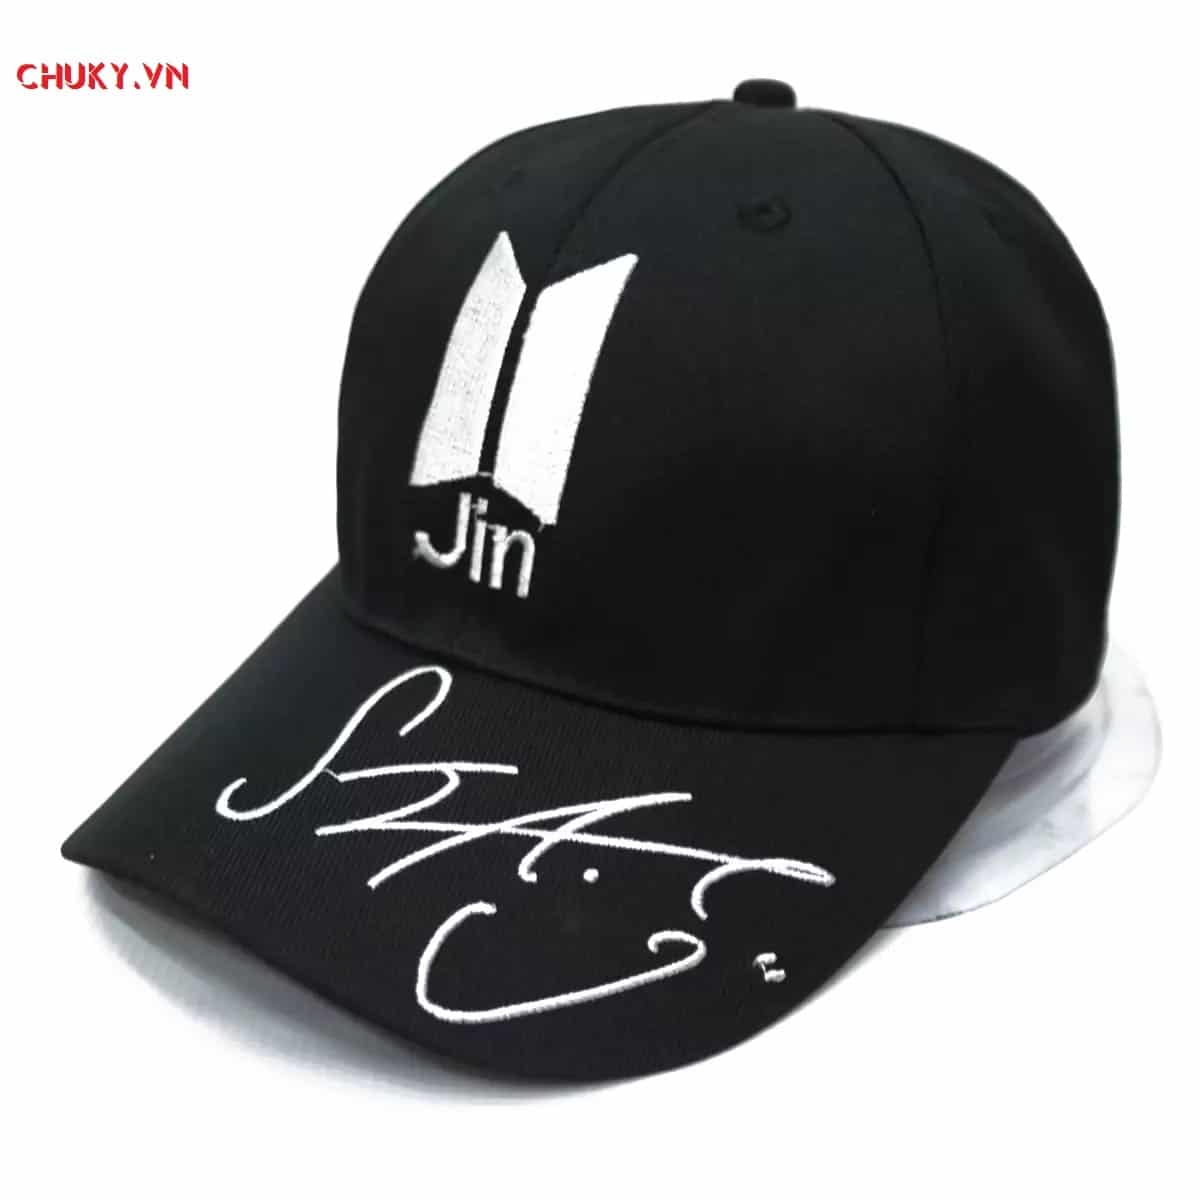 Chữ ký Jin được khắc trên mũ